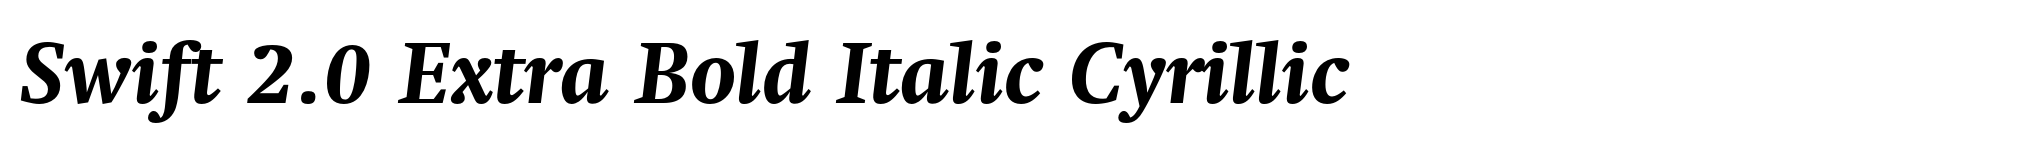 Swift 2.0 Extra Bold Italic Cyrillic image